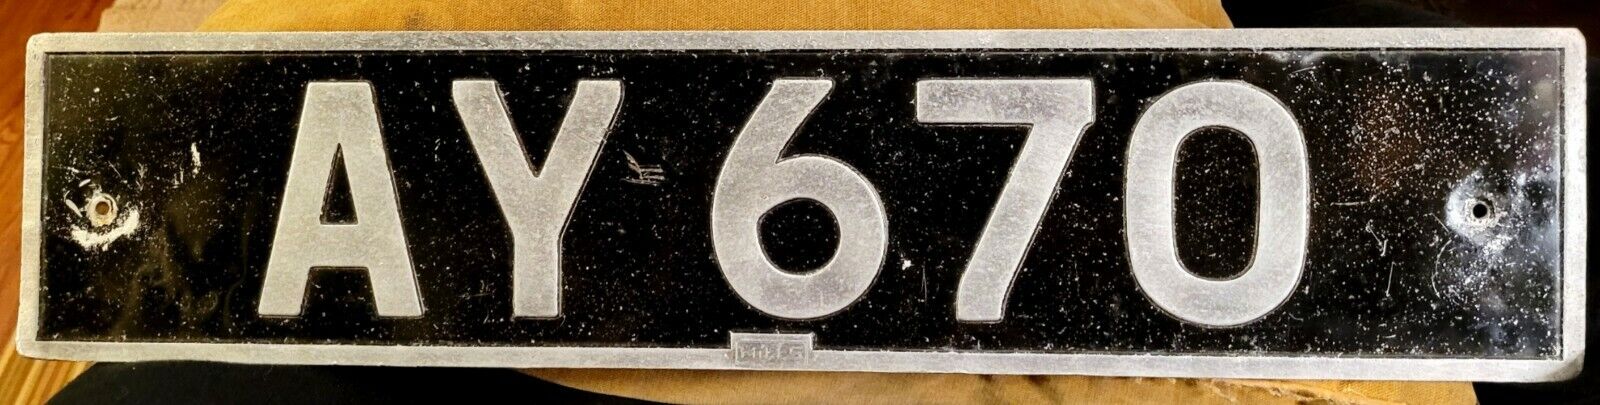 INTL - ALDERNEY - 1960s vintage rear passenger license plate - old school low #